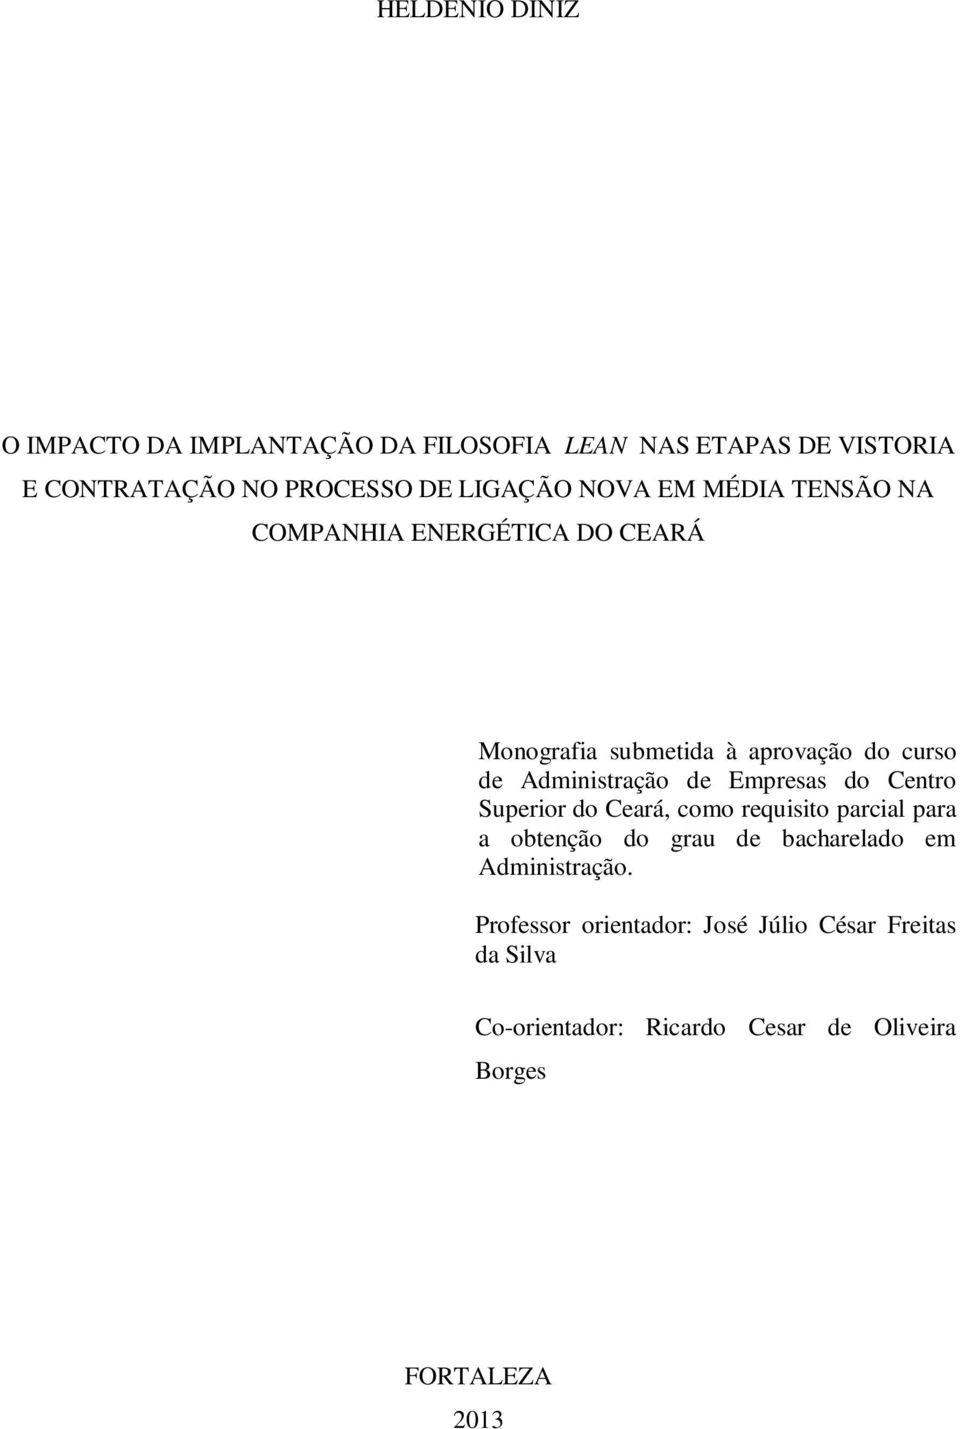 Empresas do Centro Superior do Ceará, como requisito parcial para a obtenção do grau de bacharelado em Administração.